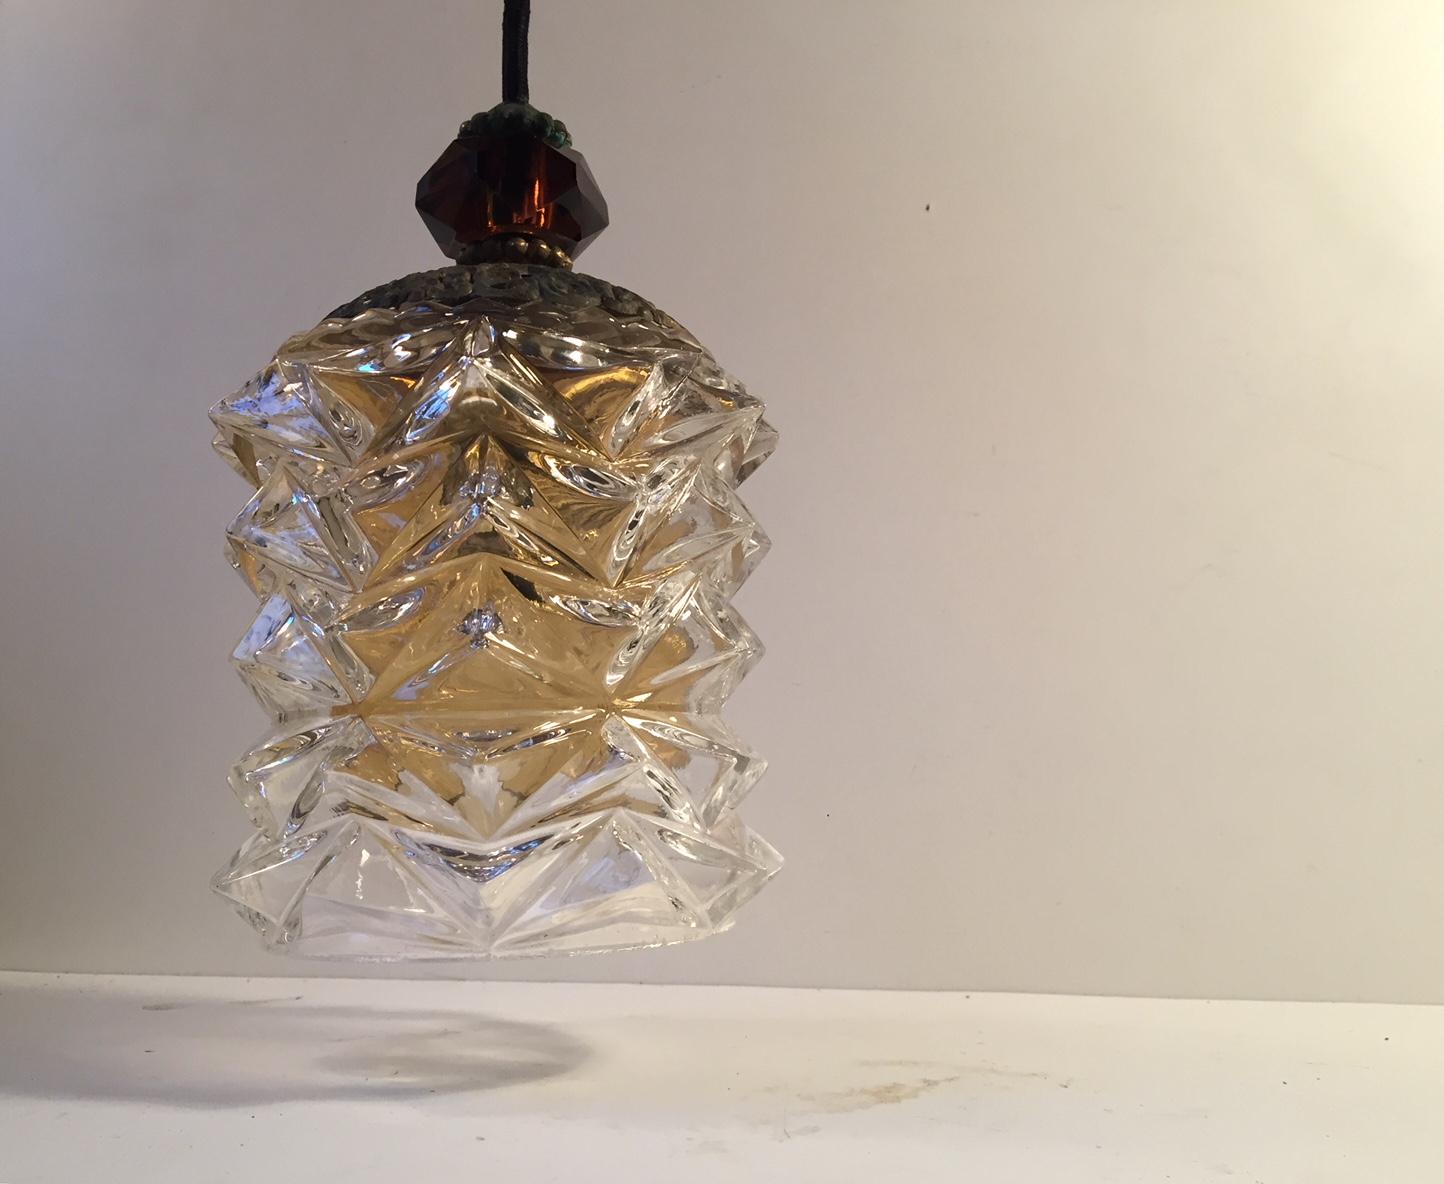 Eine stachelige skandinavisch-moderne Kristall-Pendelleuchte, die auf der Oberfläche unter dem Deckel ein Sonnenschliff-Motiv erzeugt. Der innere Schirm besteht aus bernsteinfarbenem Glas, der obere Teil aus bernsteinfarbenem, facettiertem Kristall